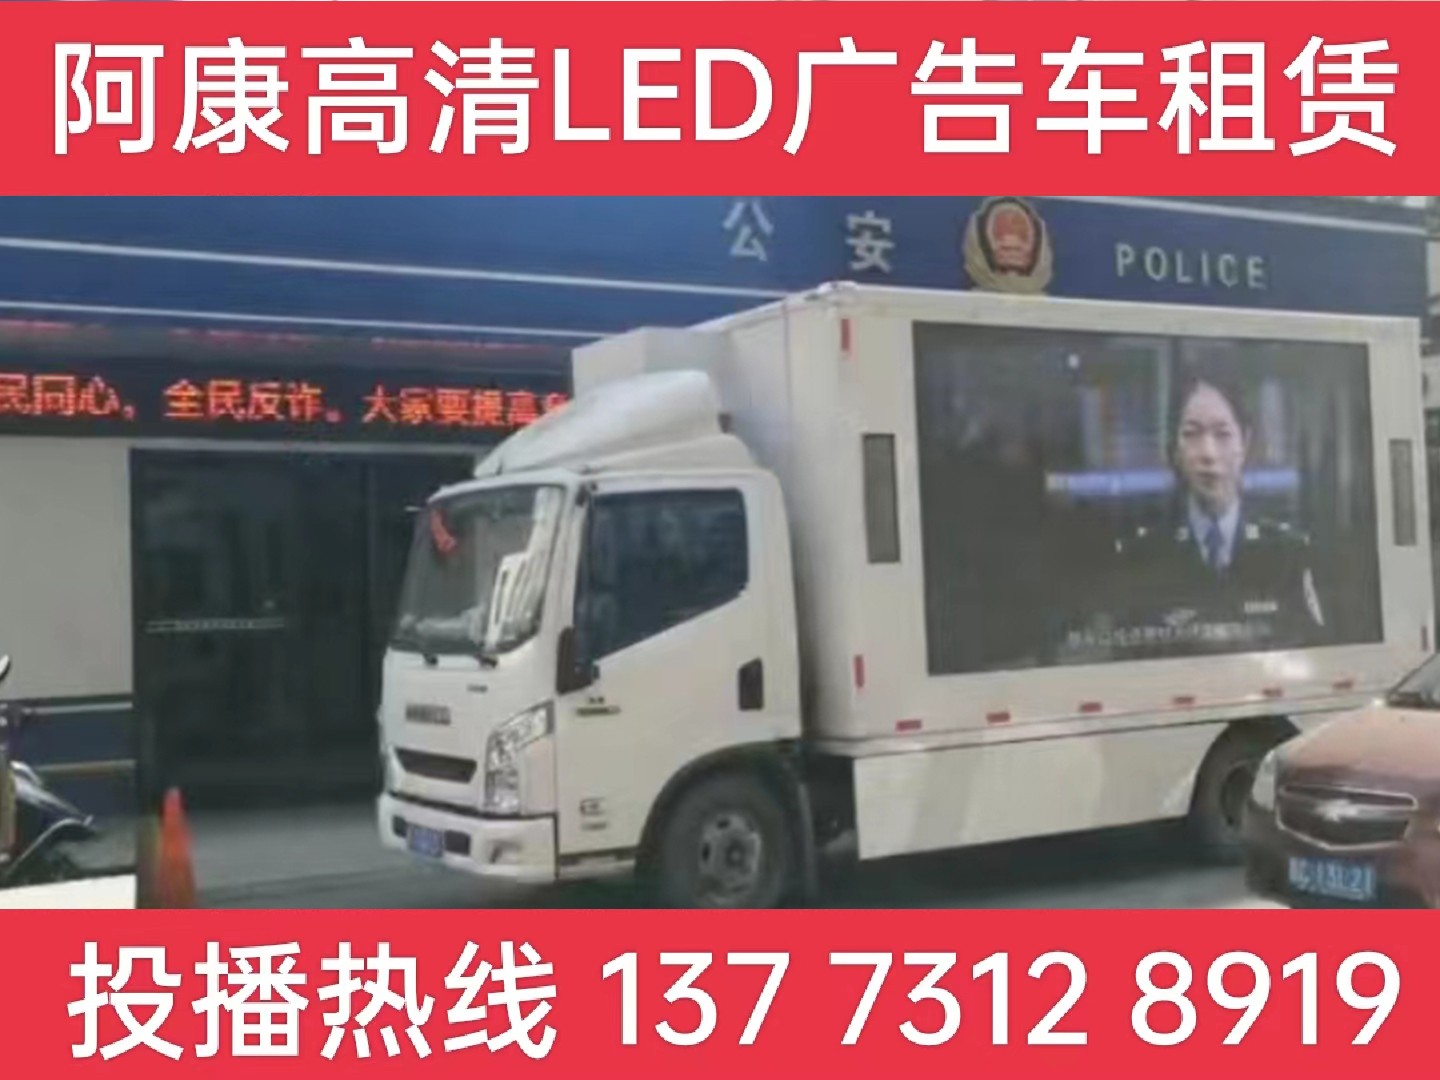 泗阳县LED广告车租赁-反诈宣传